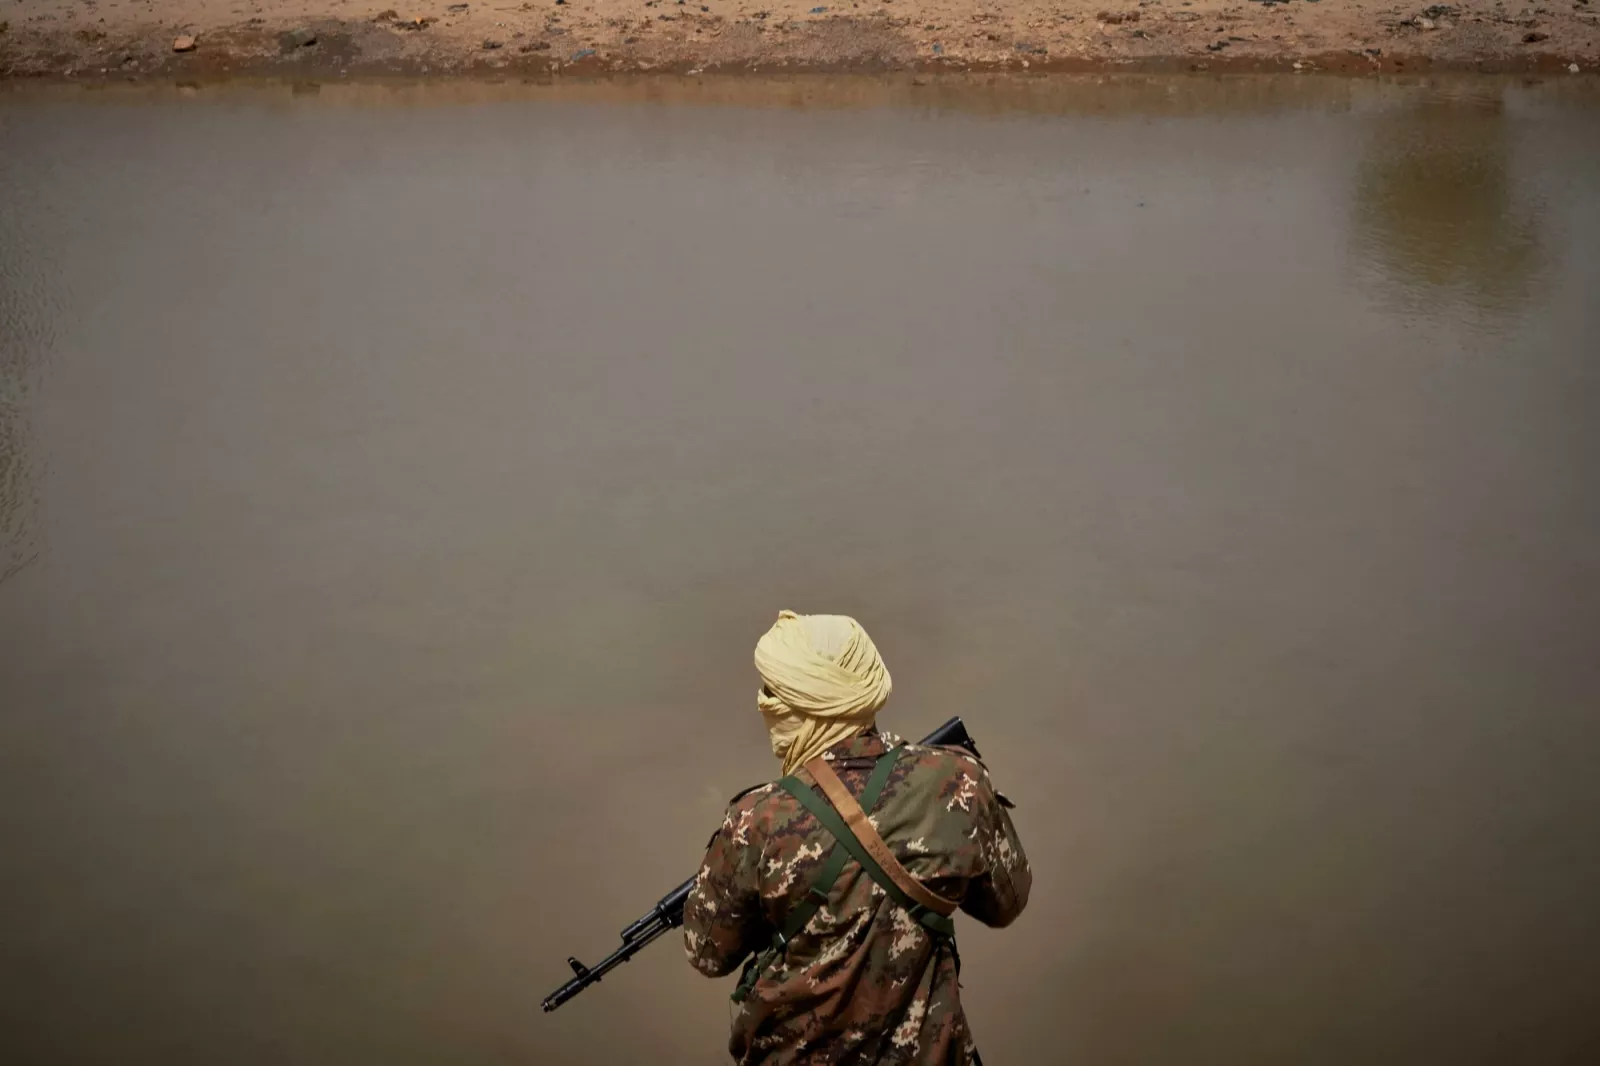 Mali : HRW accuse des soldats maliens et présumés russes d'avoir exécuté 300 civils en mars